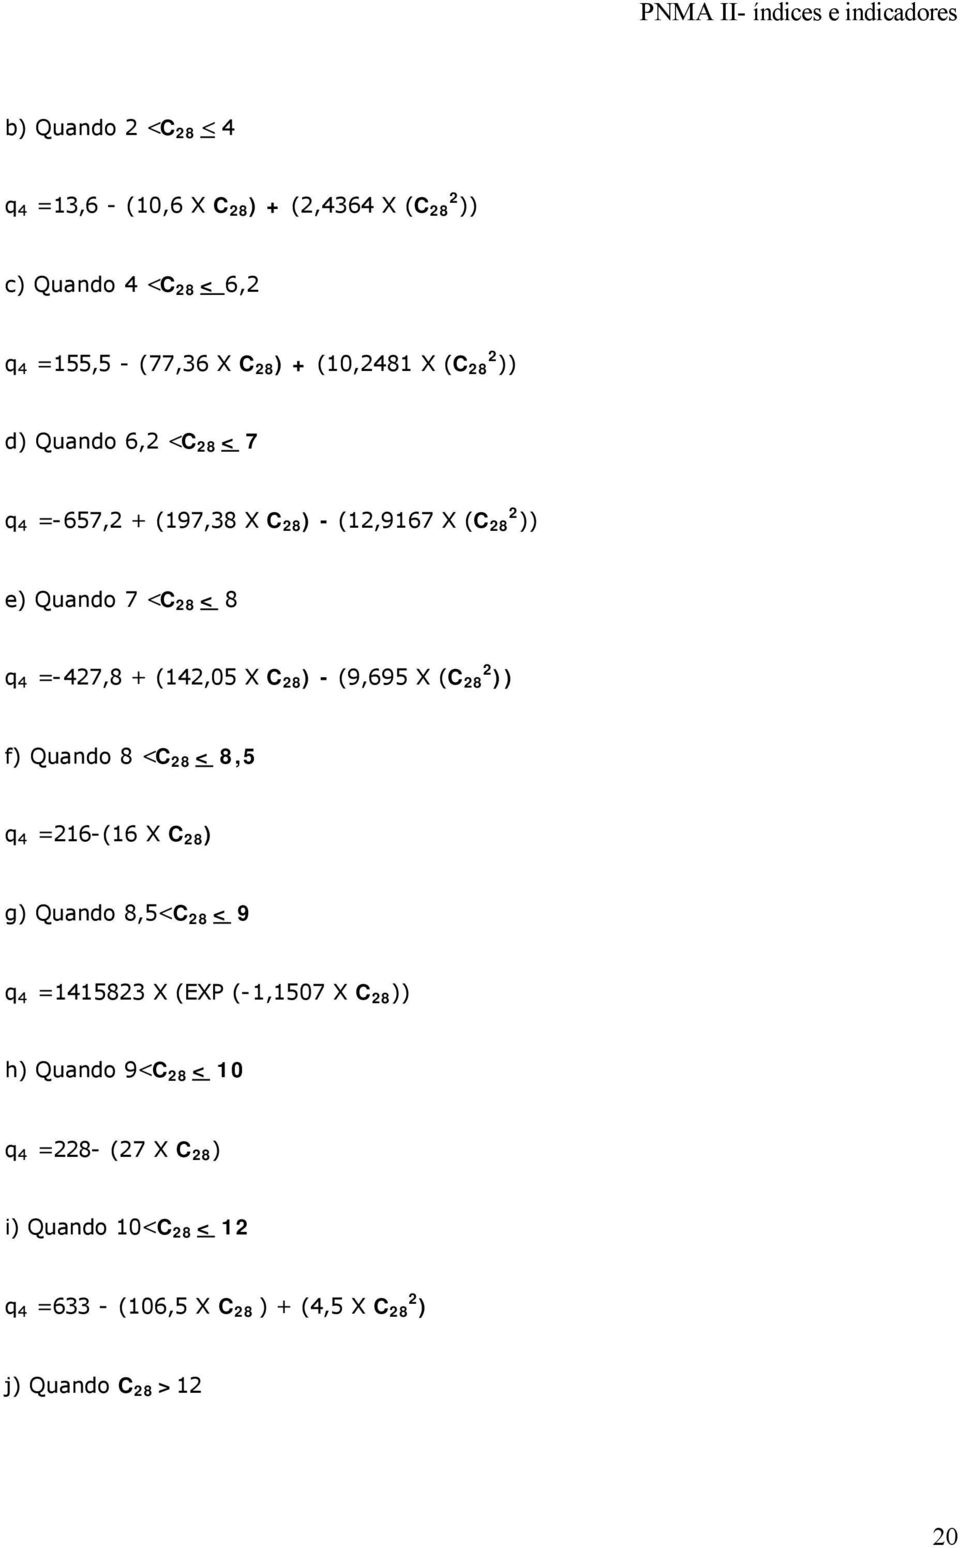 X C 28 ) - (9,695 X (C 28 2 )) f) Quando 8 <C 28 < 8,5 q 4 =216-(16 X C 28 ) g) Quando 8,5<C 28 < 9 q 4 =1415823 X (EXP (-1,1507 X C 28